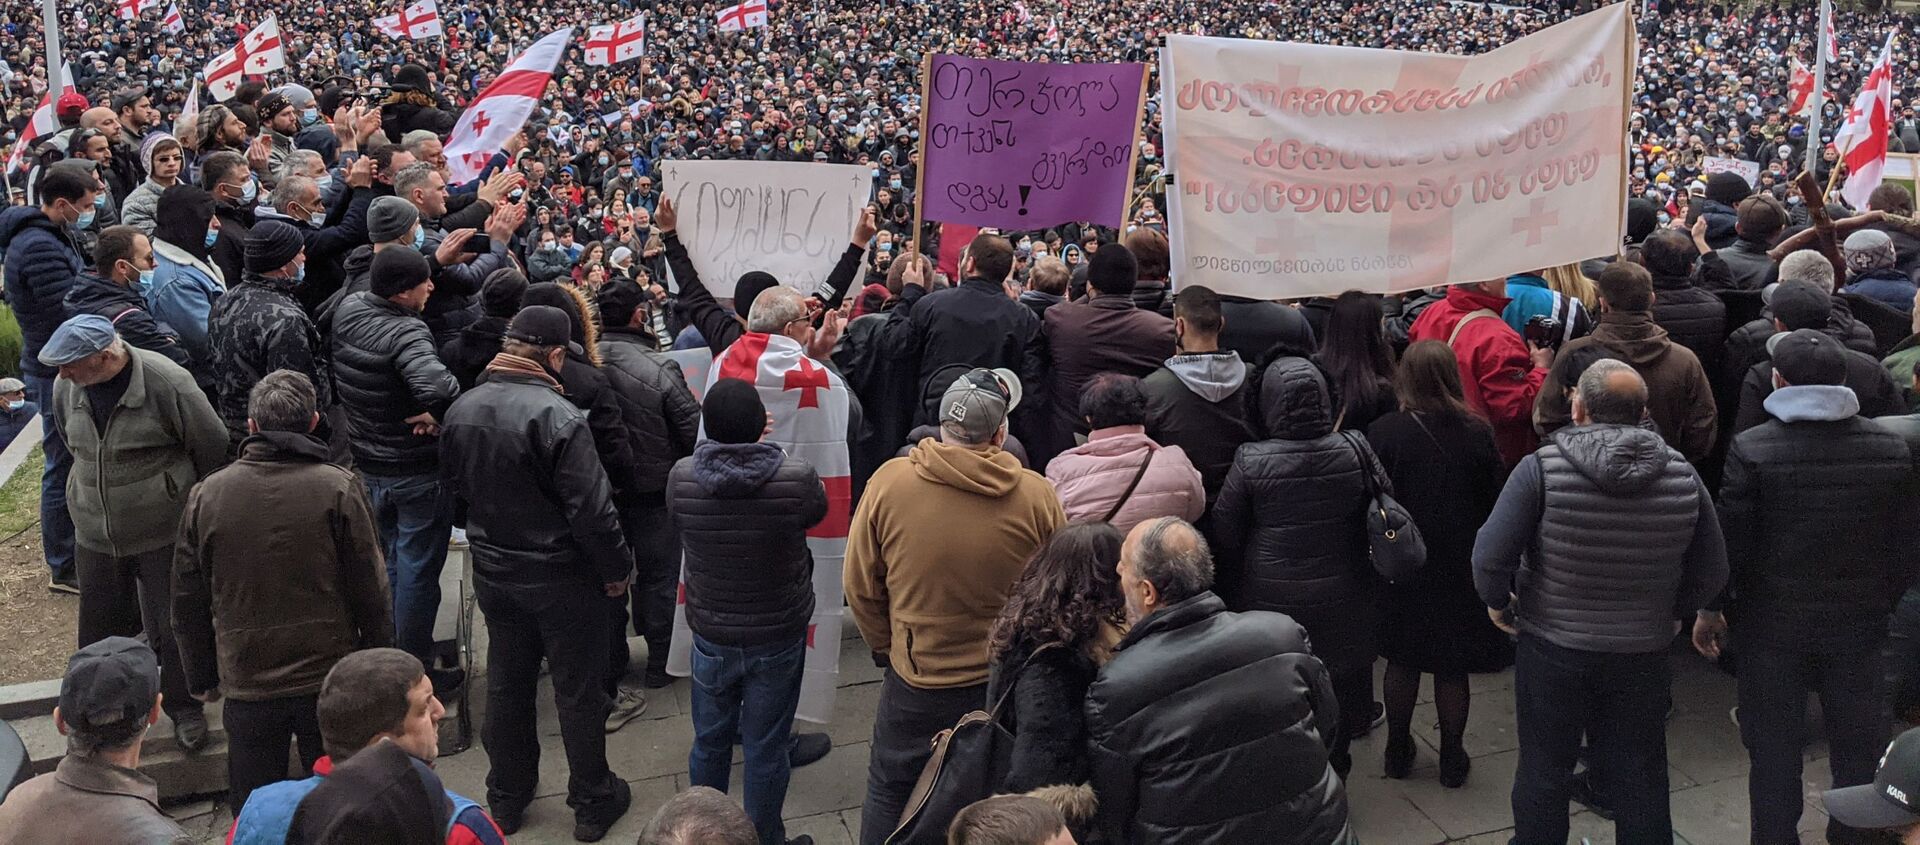 Акция протеста против строительства НамахваниГЭС 28 февраля 2021 года - Sputnik Грузия, 1920, 12.03.2021